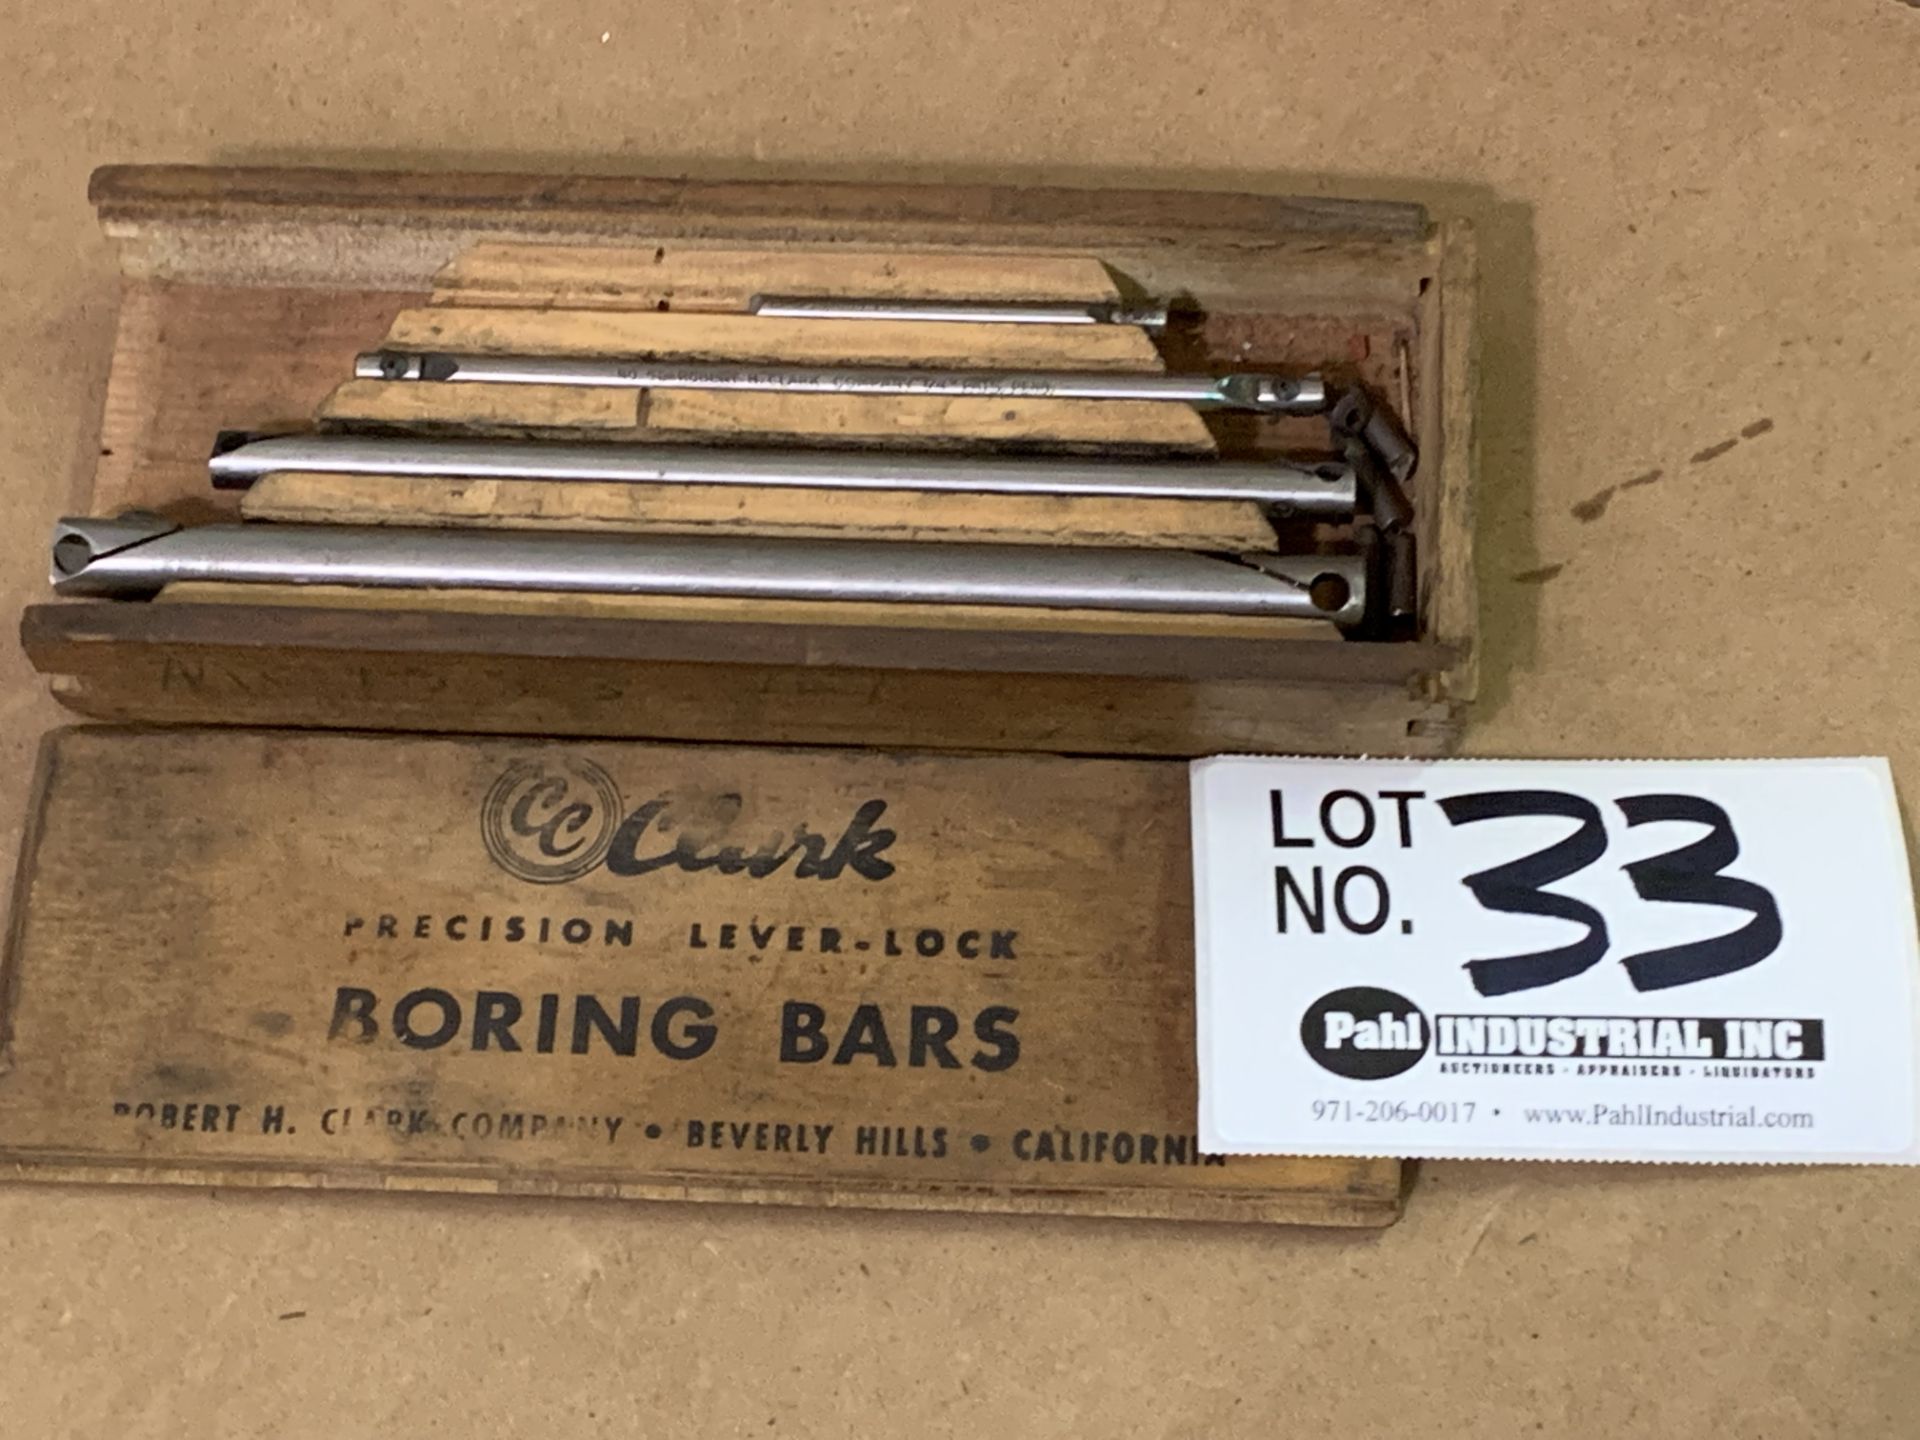 Clark Precision Lever-Lock Boring Bar Set w/box Complete